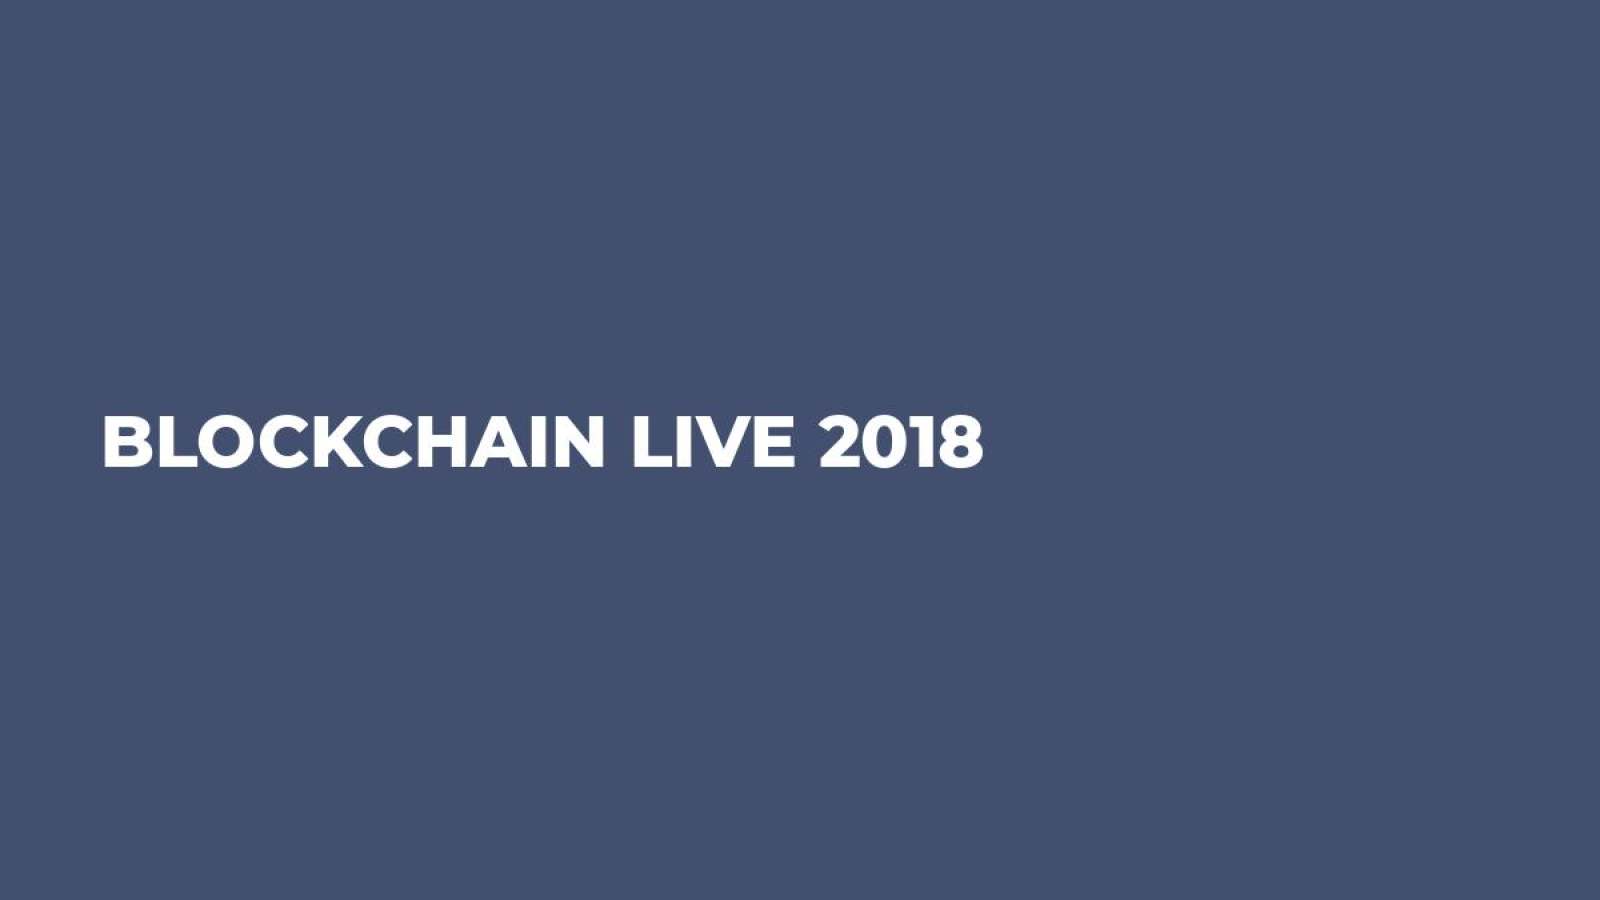 BLOCKCHAIN LIVE 2018